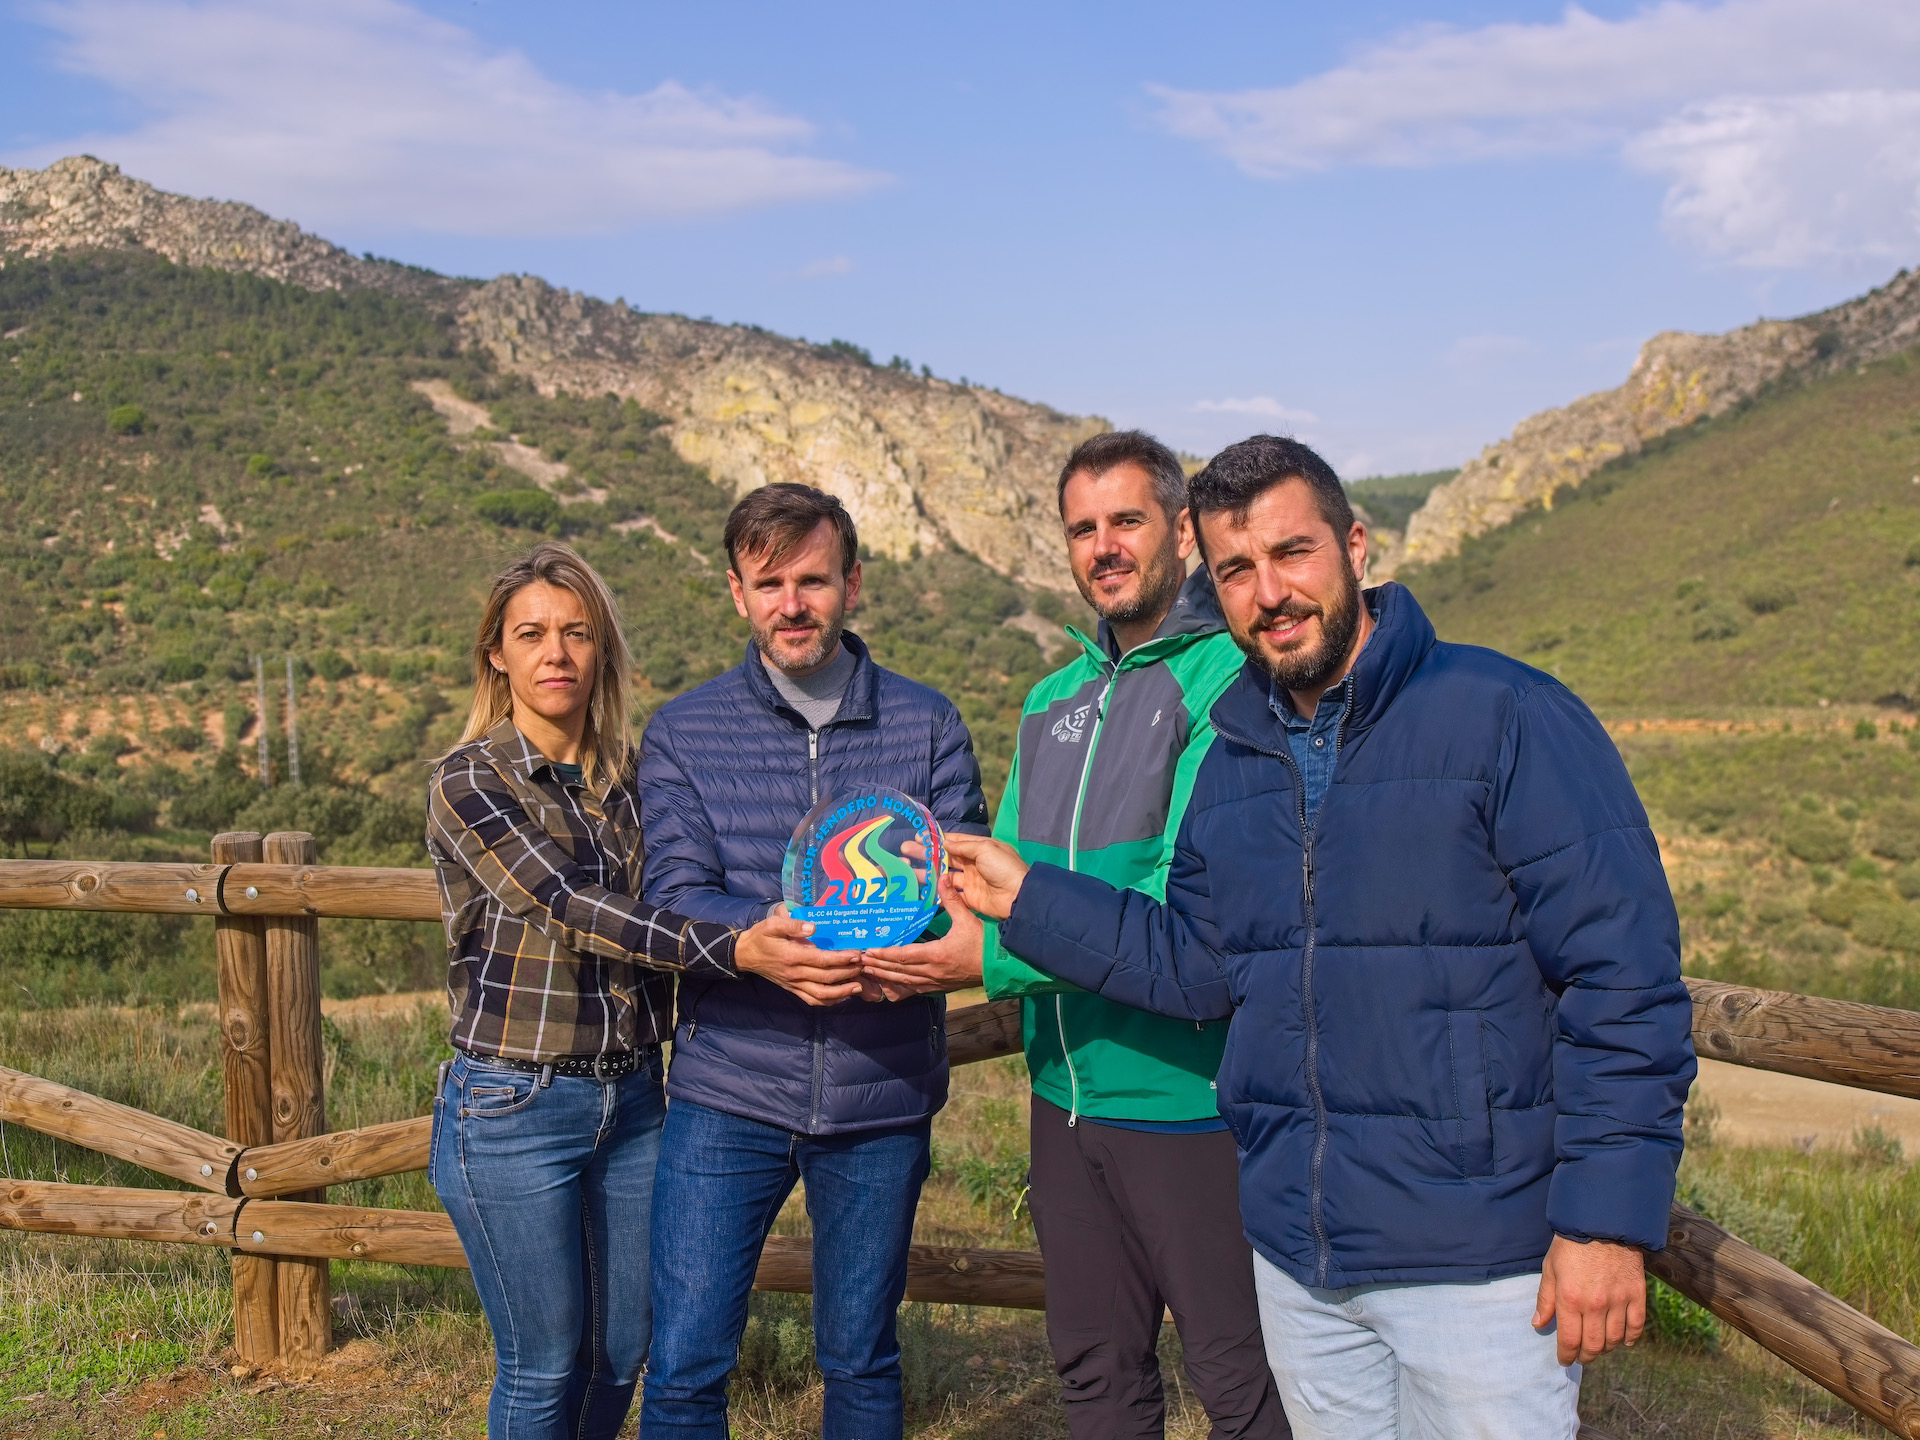 4 personas en primer plano, 1 mujer y 3 hombres, sujetan una placa conmemorativa del premio otorgado por el Mejor senderos homologado 2022. De fondo se ve la Garganta del Fraile, que es un cortado de cuarcita entre bosque mediterráneo.